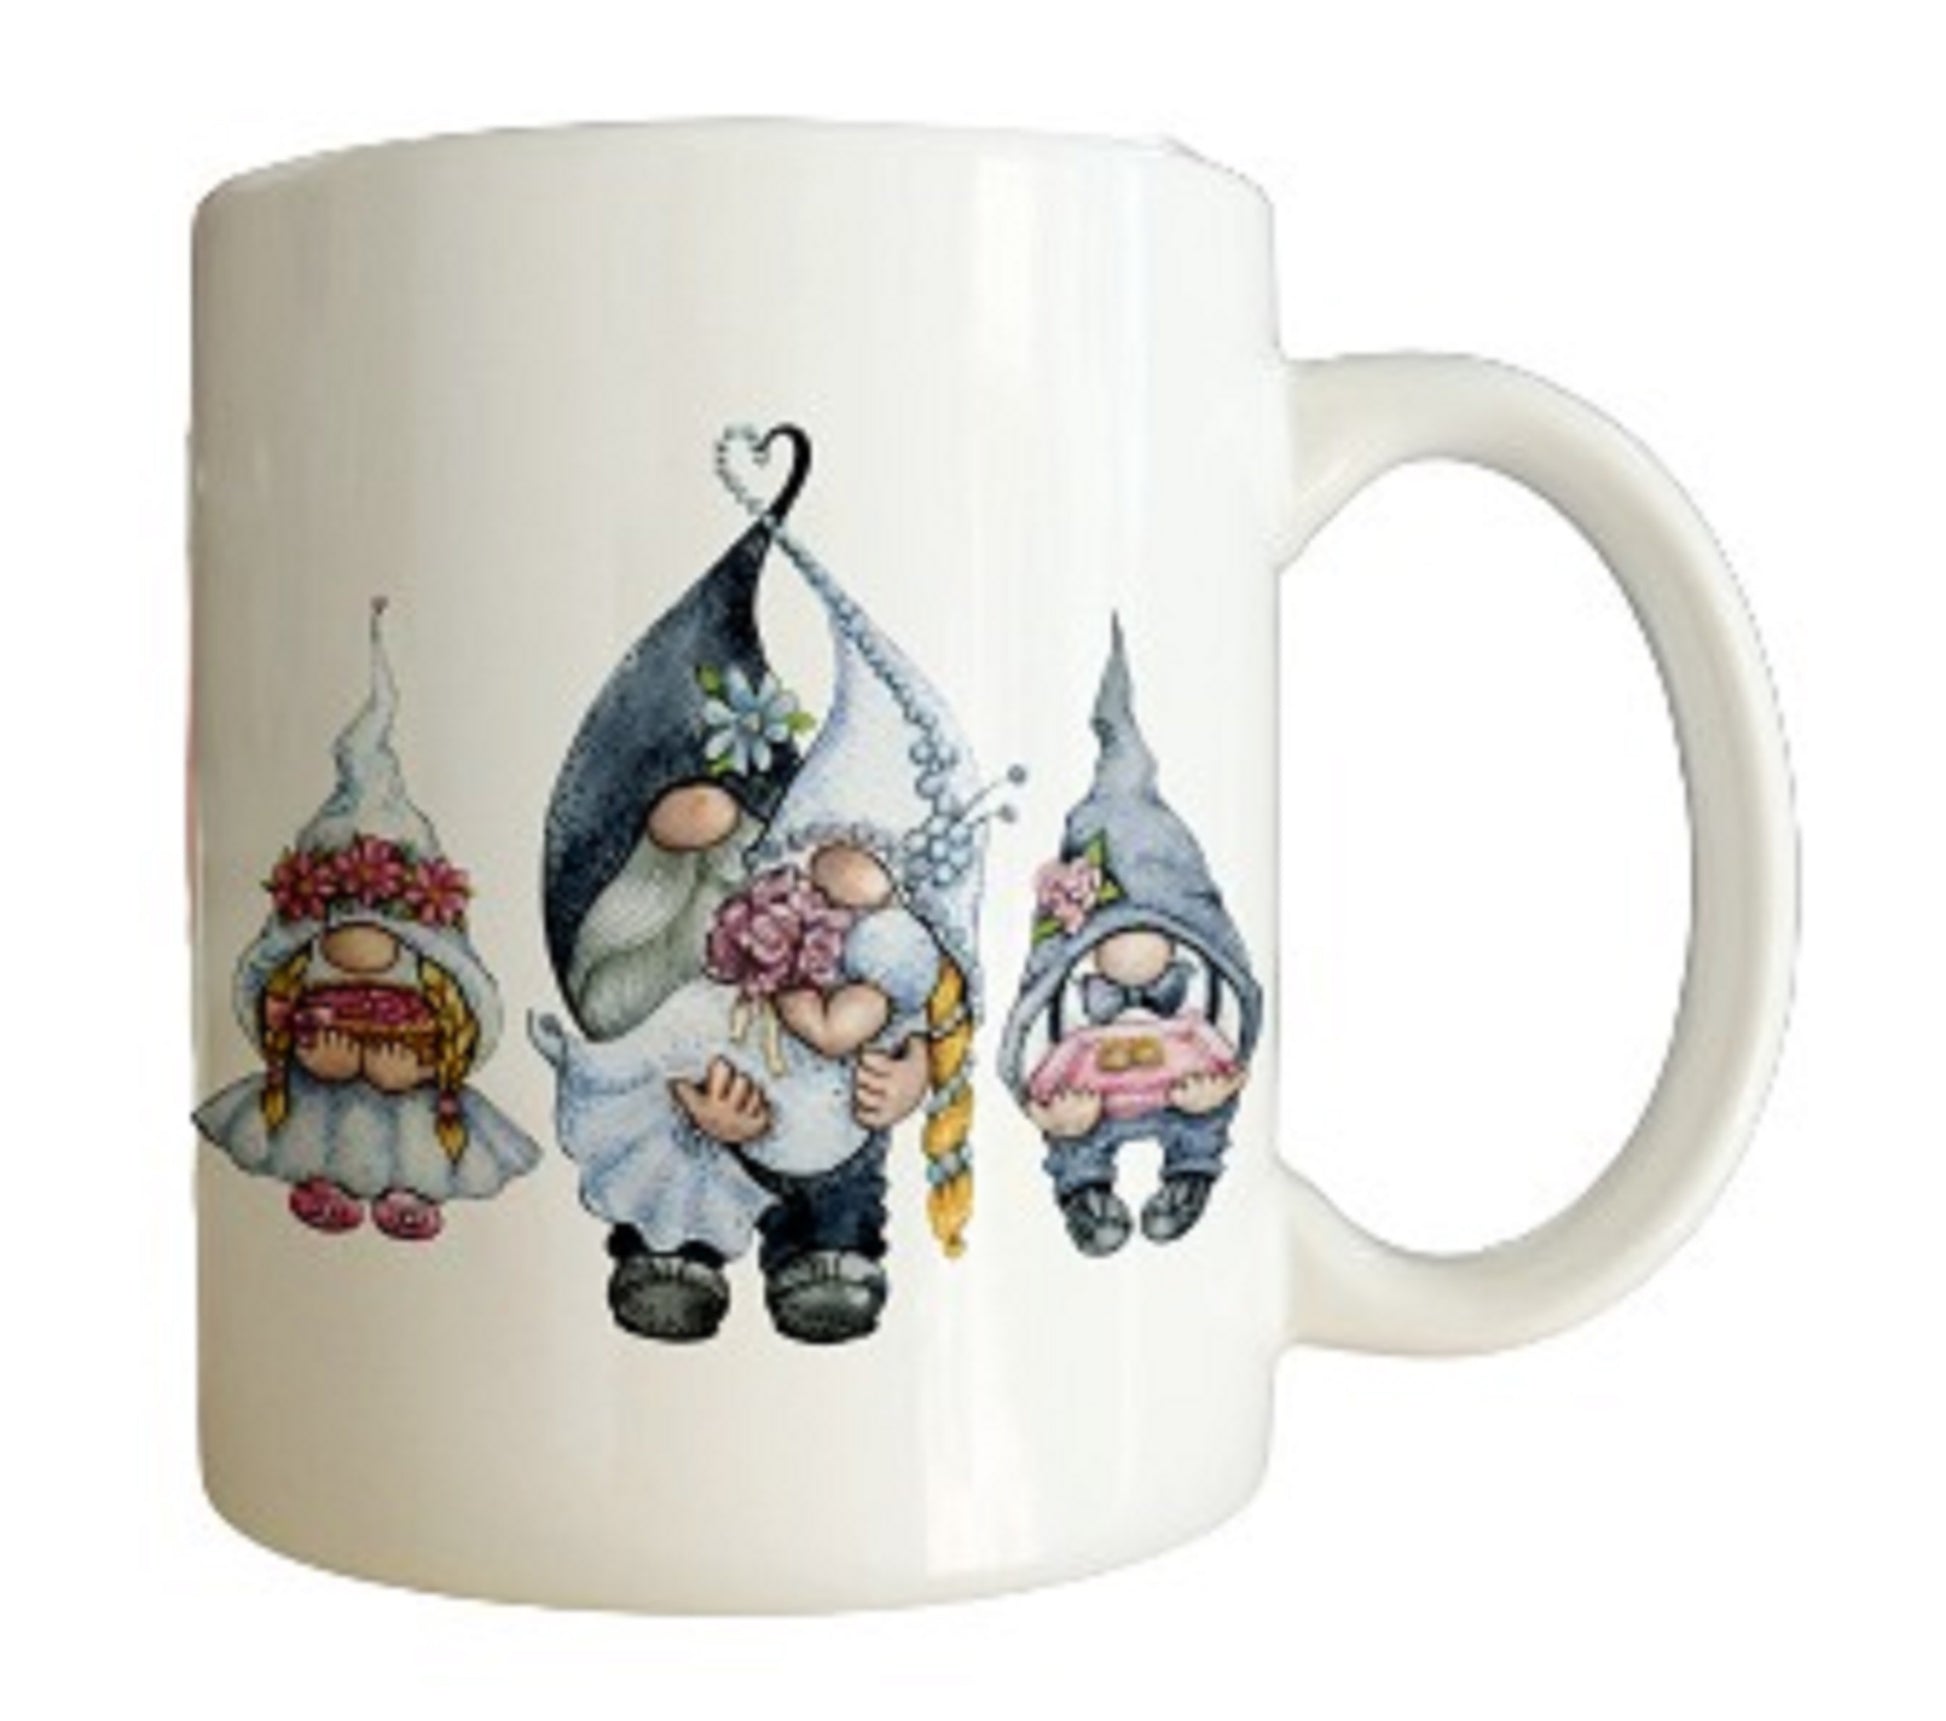  Wedding Gnomes Coffee Mug by Free Spirit Accessories sold by Free Spirit Accessories